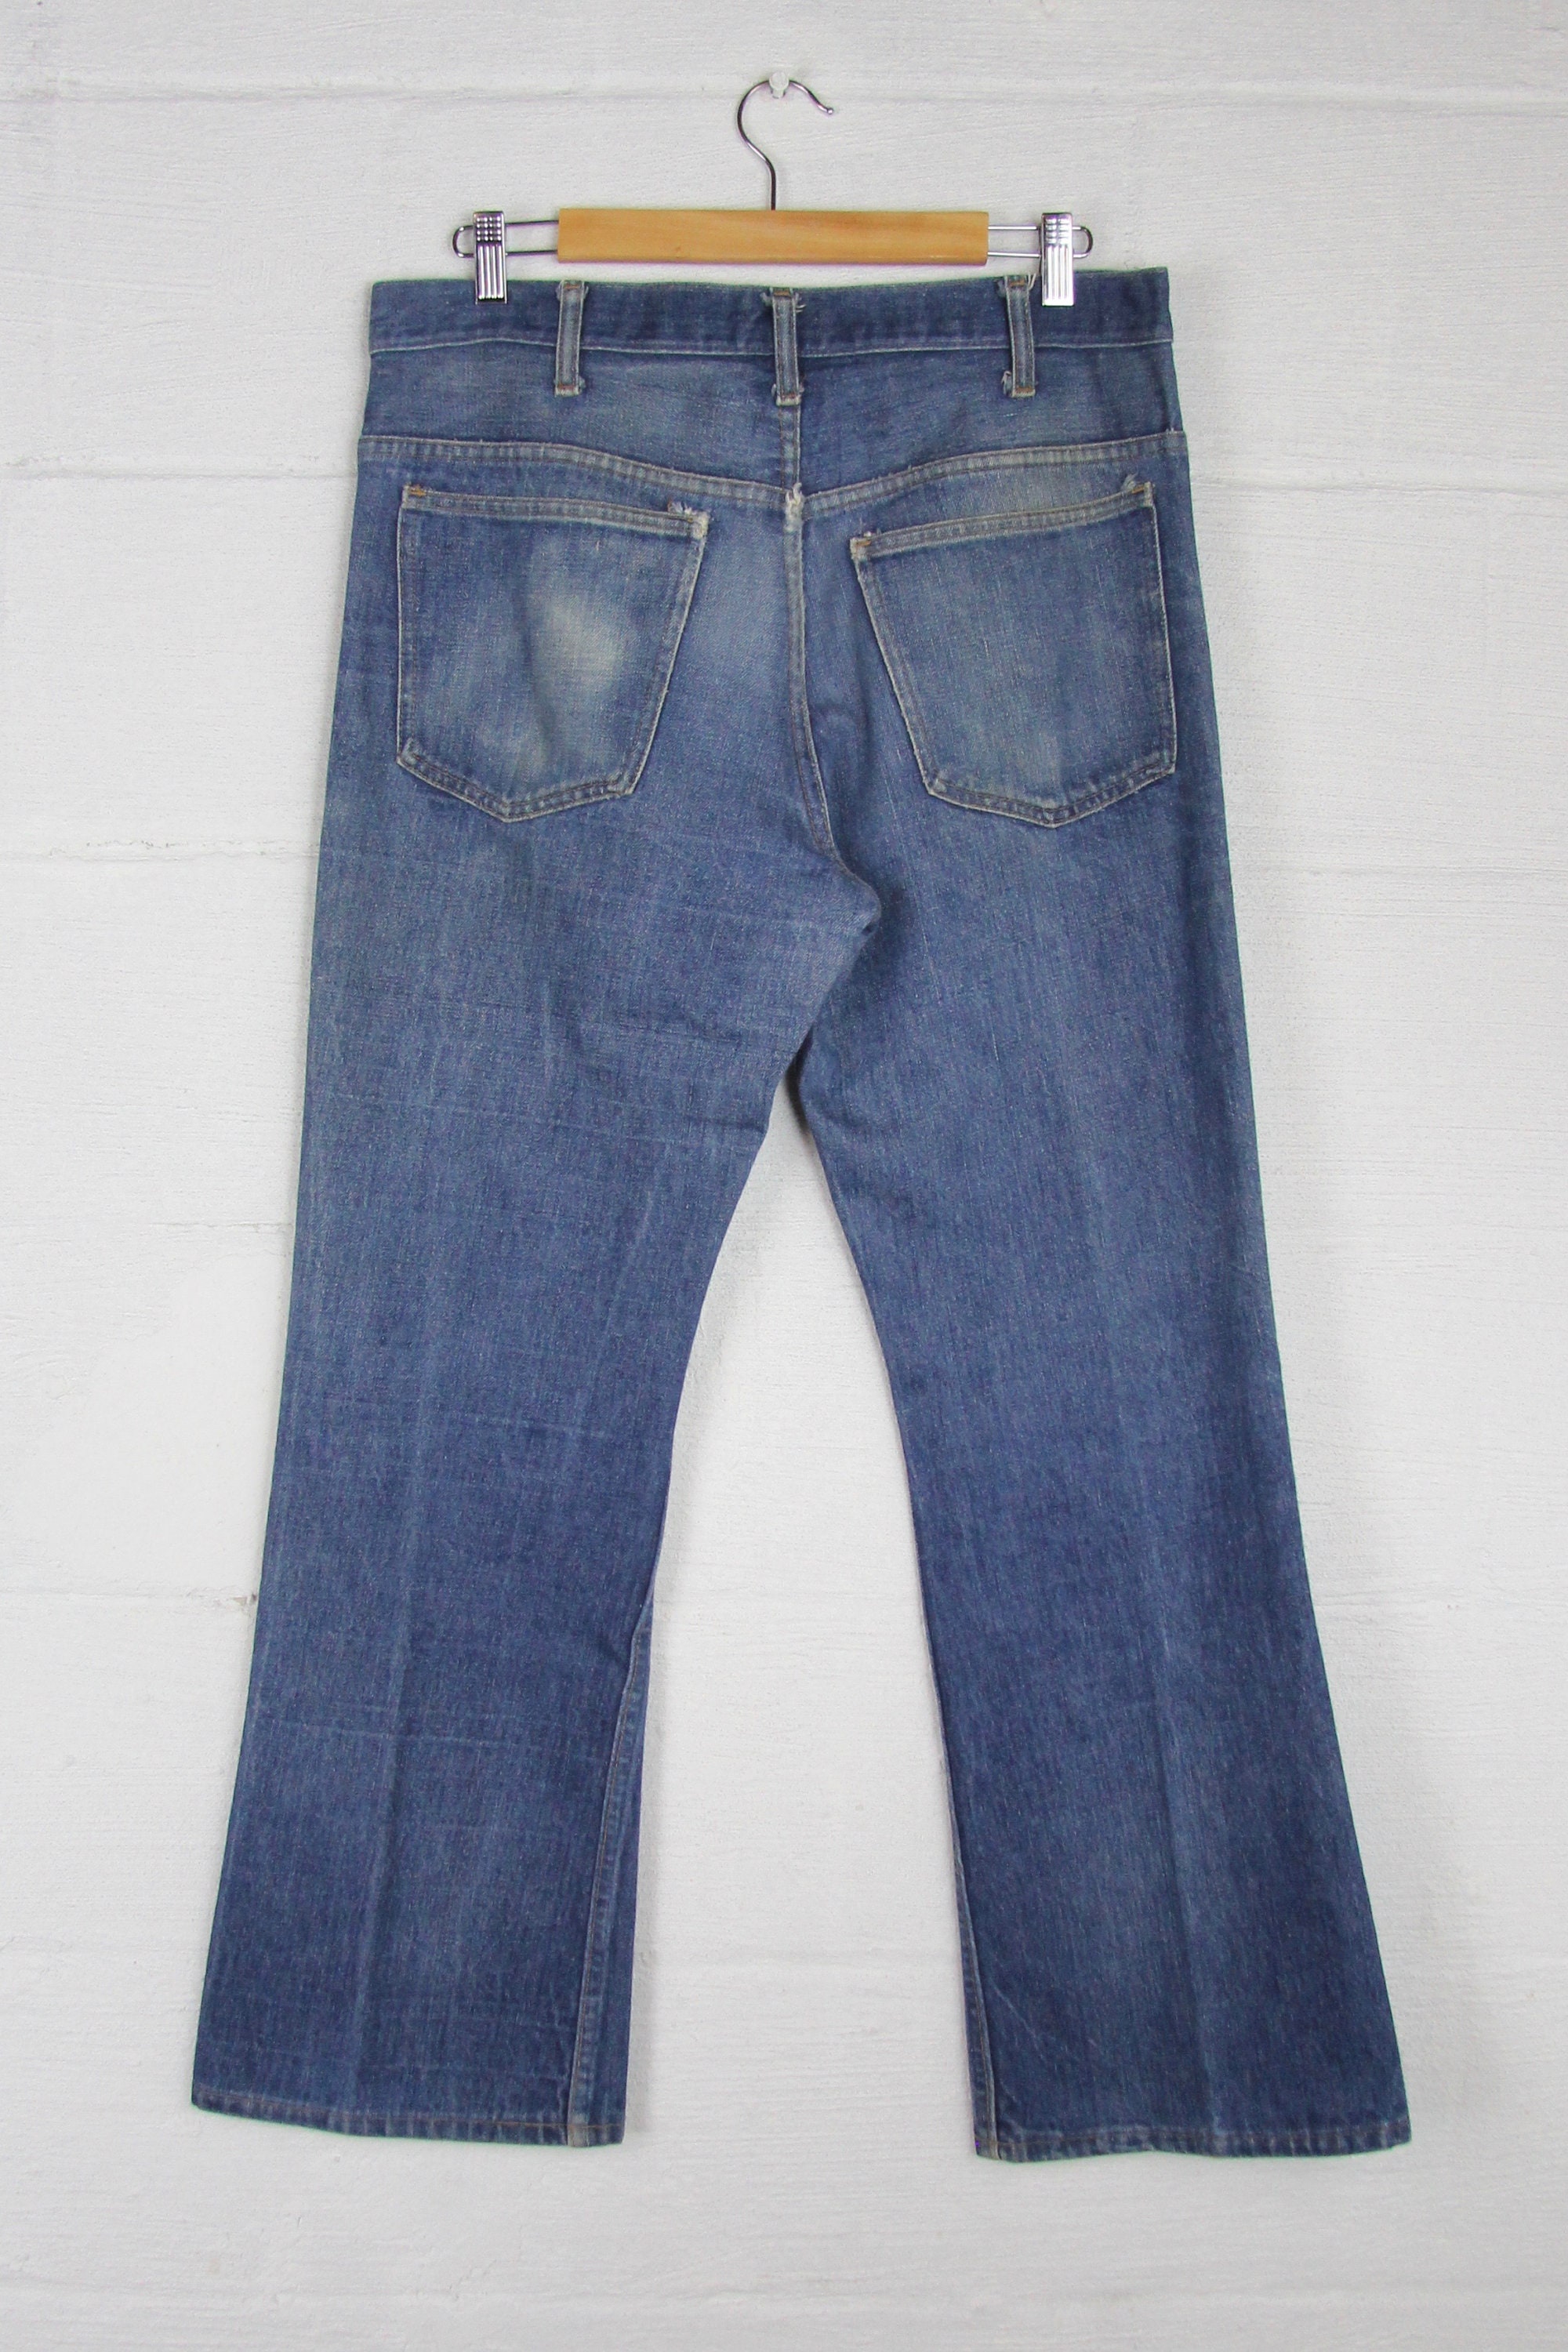 Men's 70's Boot Cut Denim Jeans JC Penny 35 Large